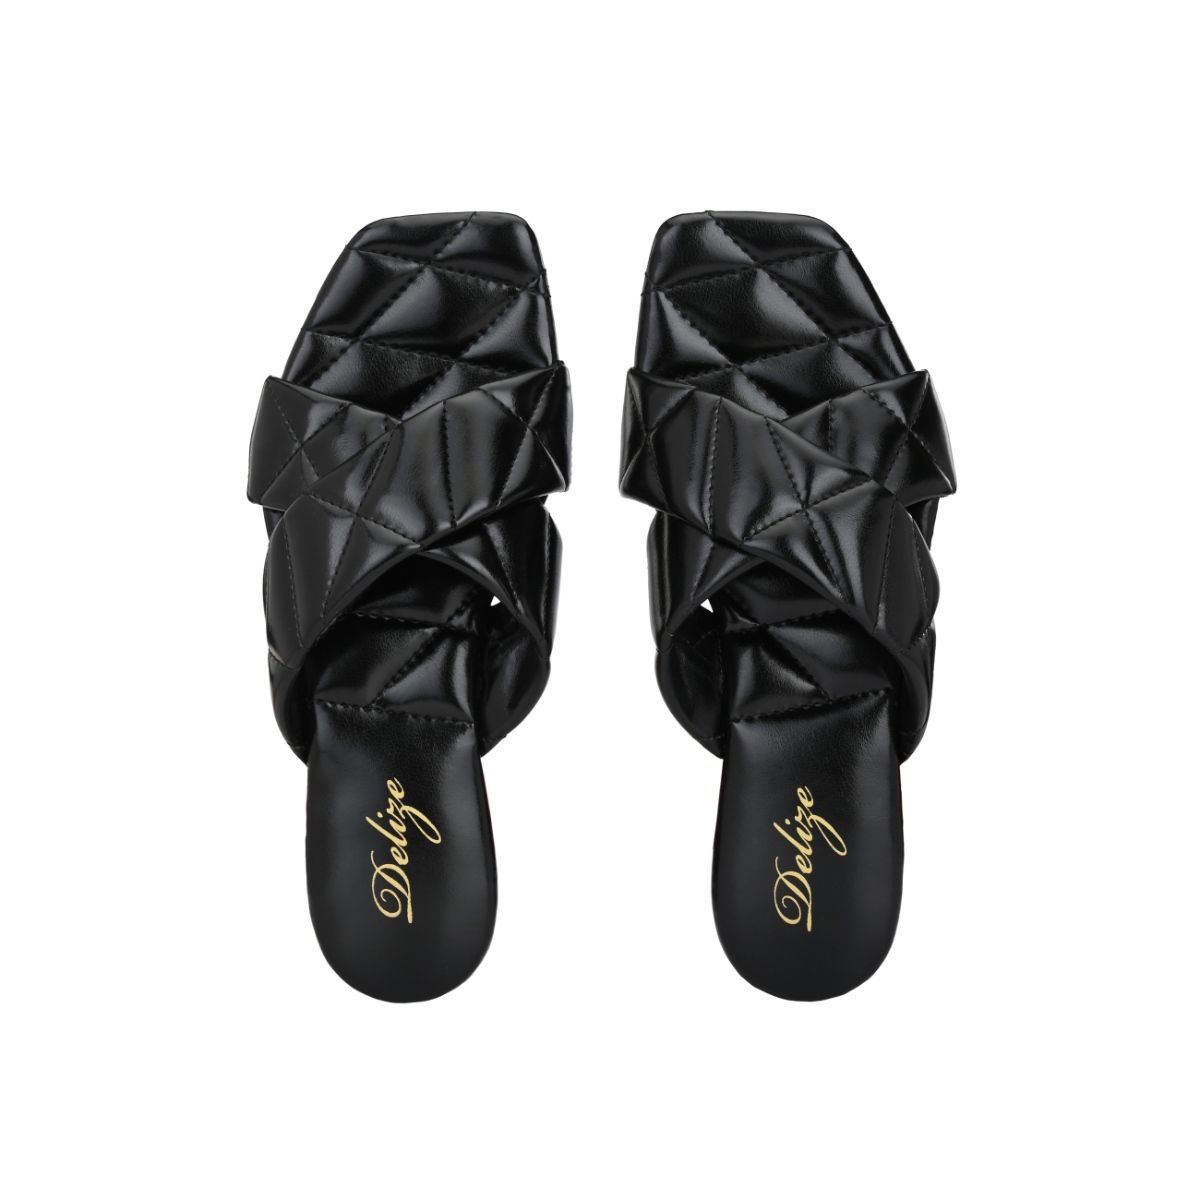 Skechers Arch Fit Adjustable Hook & Loop Fastening Vegan Friendly Sandals -  Womens from Westwoods UK